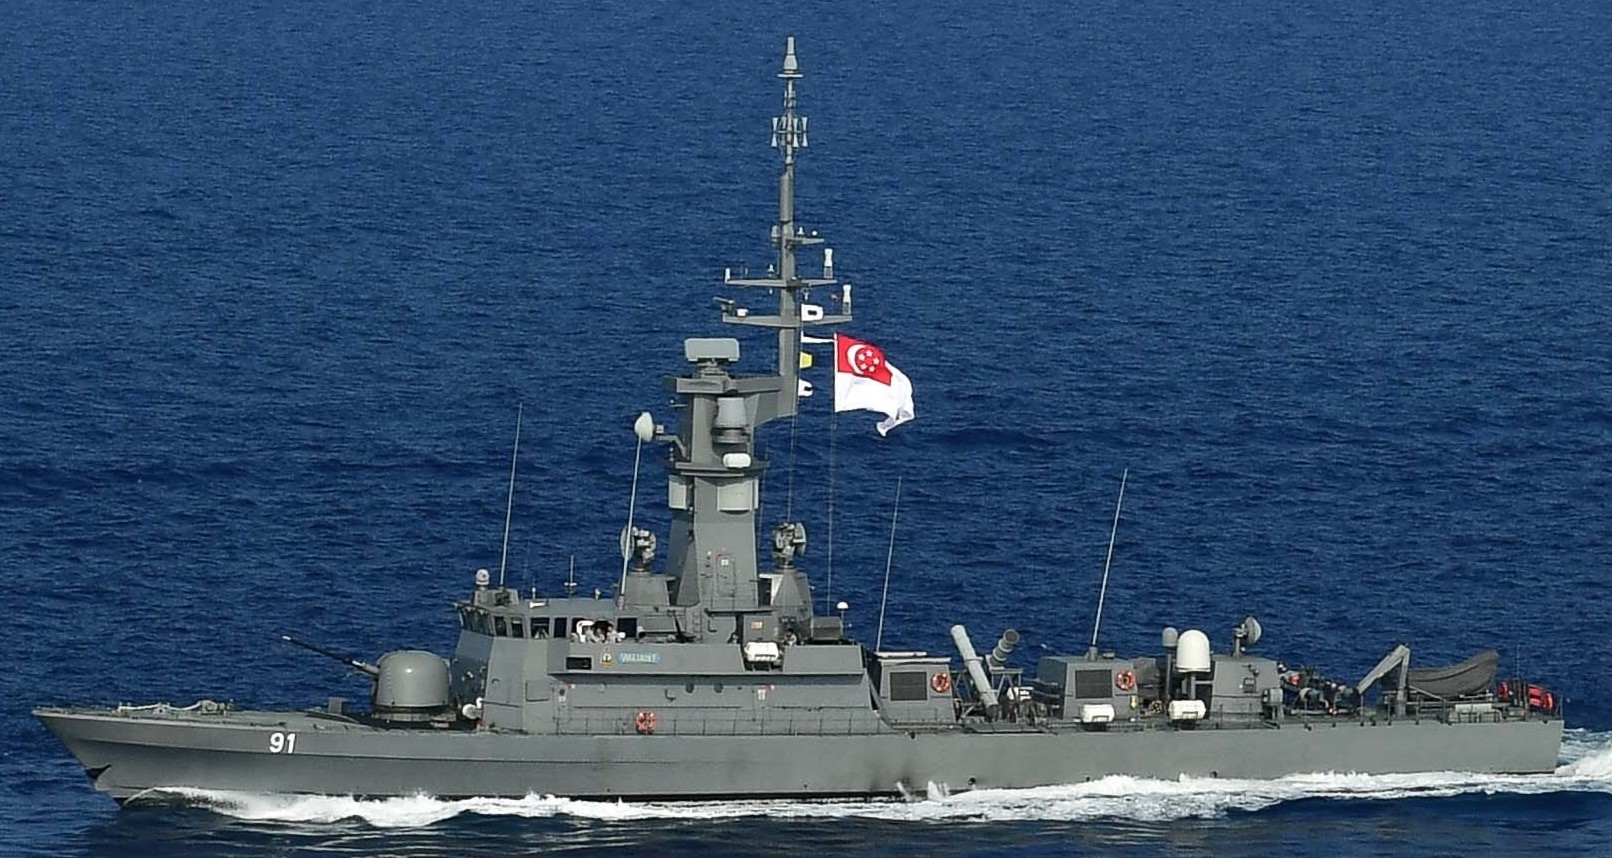 91 rss valiant victory class missile corvette republic singapore navy 13